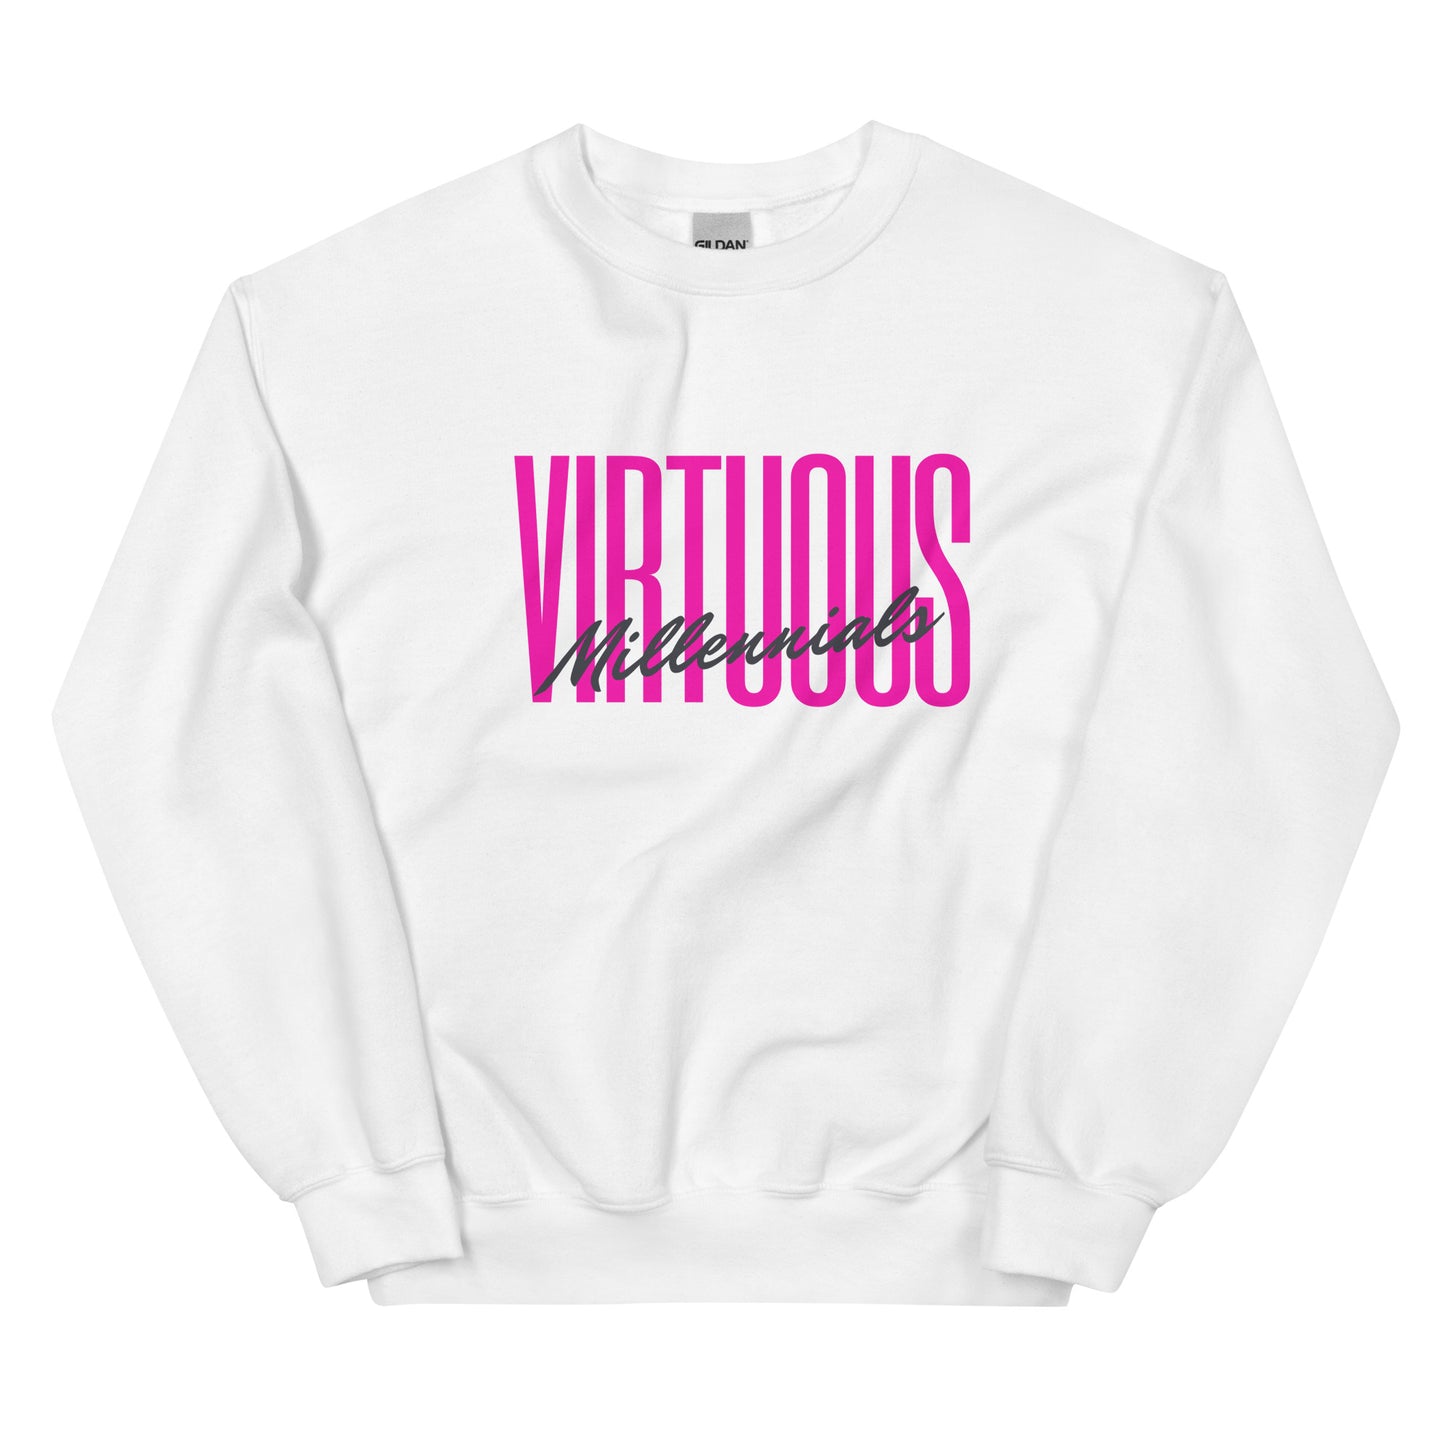 Virtuous Millennials Sweatshirt